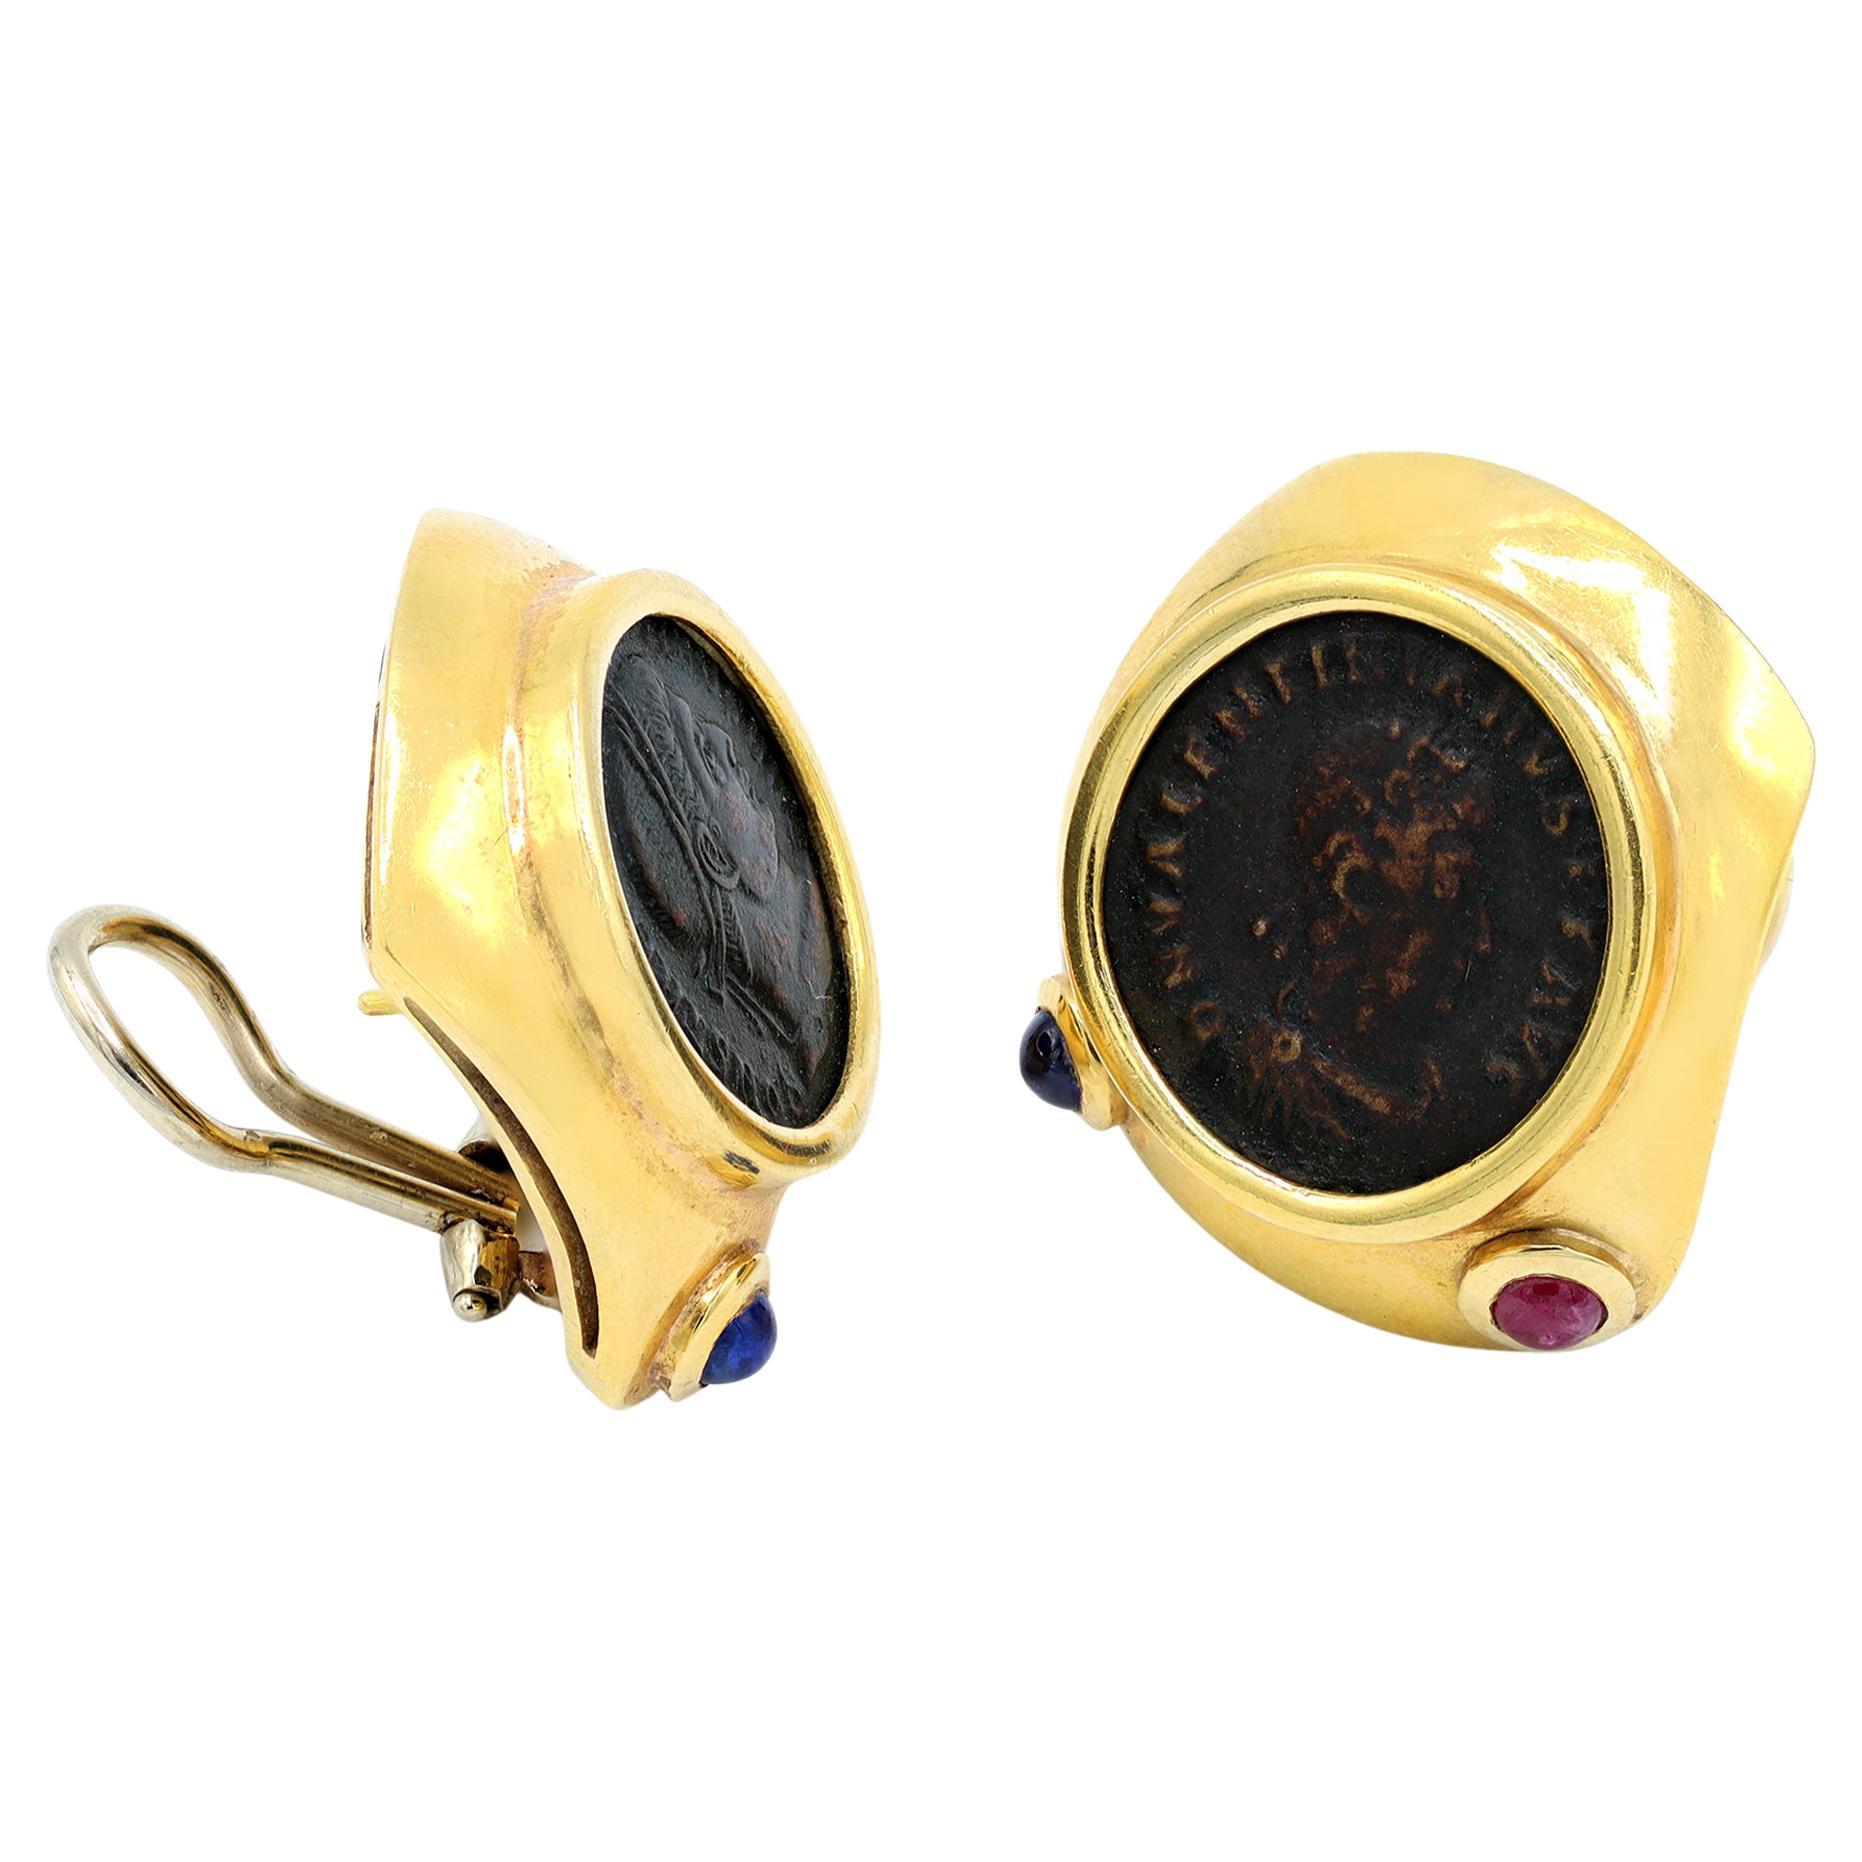 Une paire de boucles d'oreilles à clip vers 1960-70 représentant des pièces de monnaie romaines antiques. La monture est en or jaune 18 carats, ornée de petits saphirs et rubis cabochons sur la face inférieure de la lunette. Les quatre cabochons ont